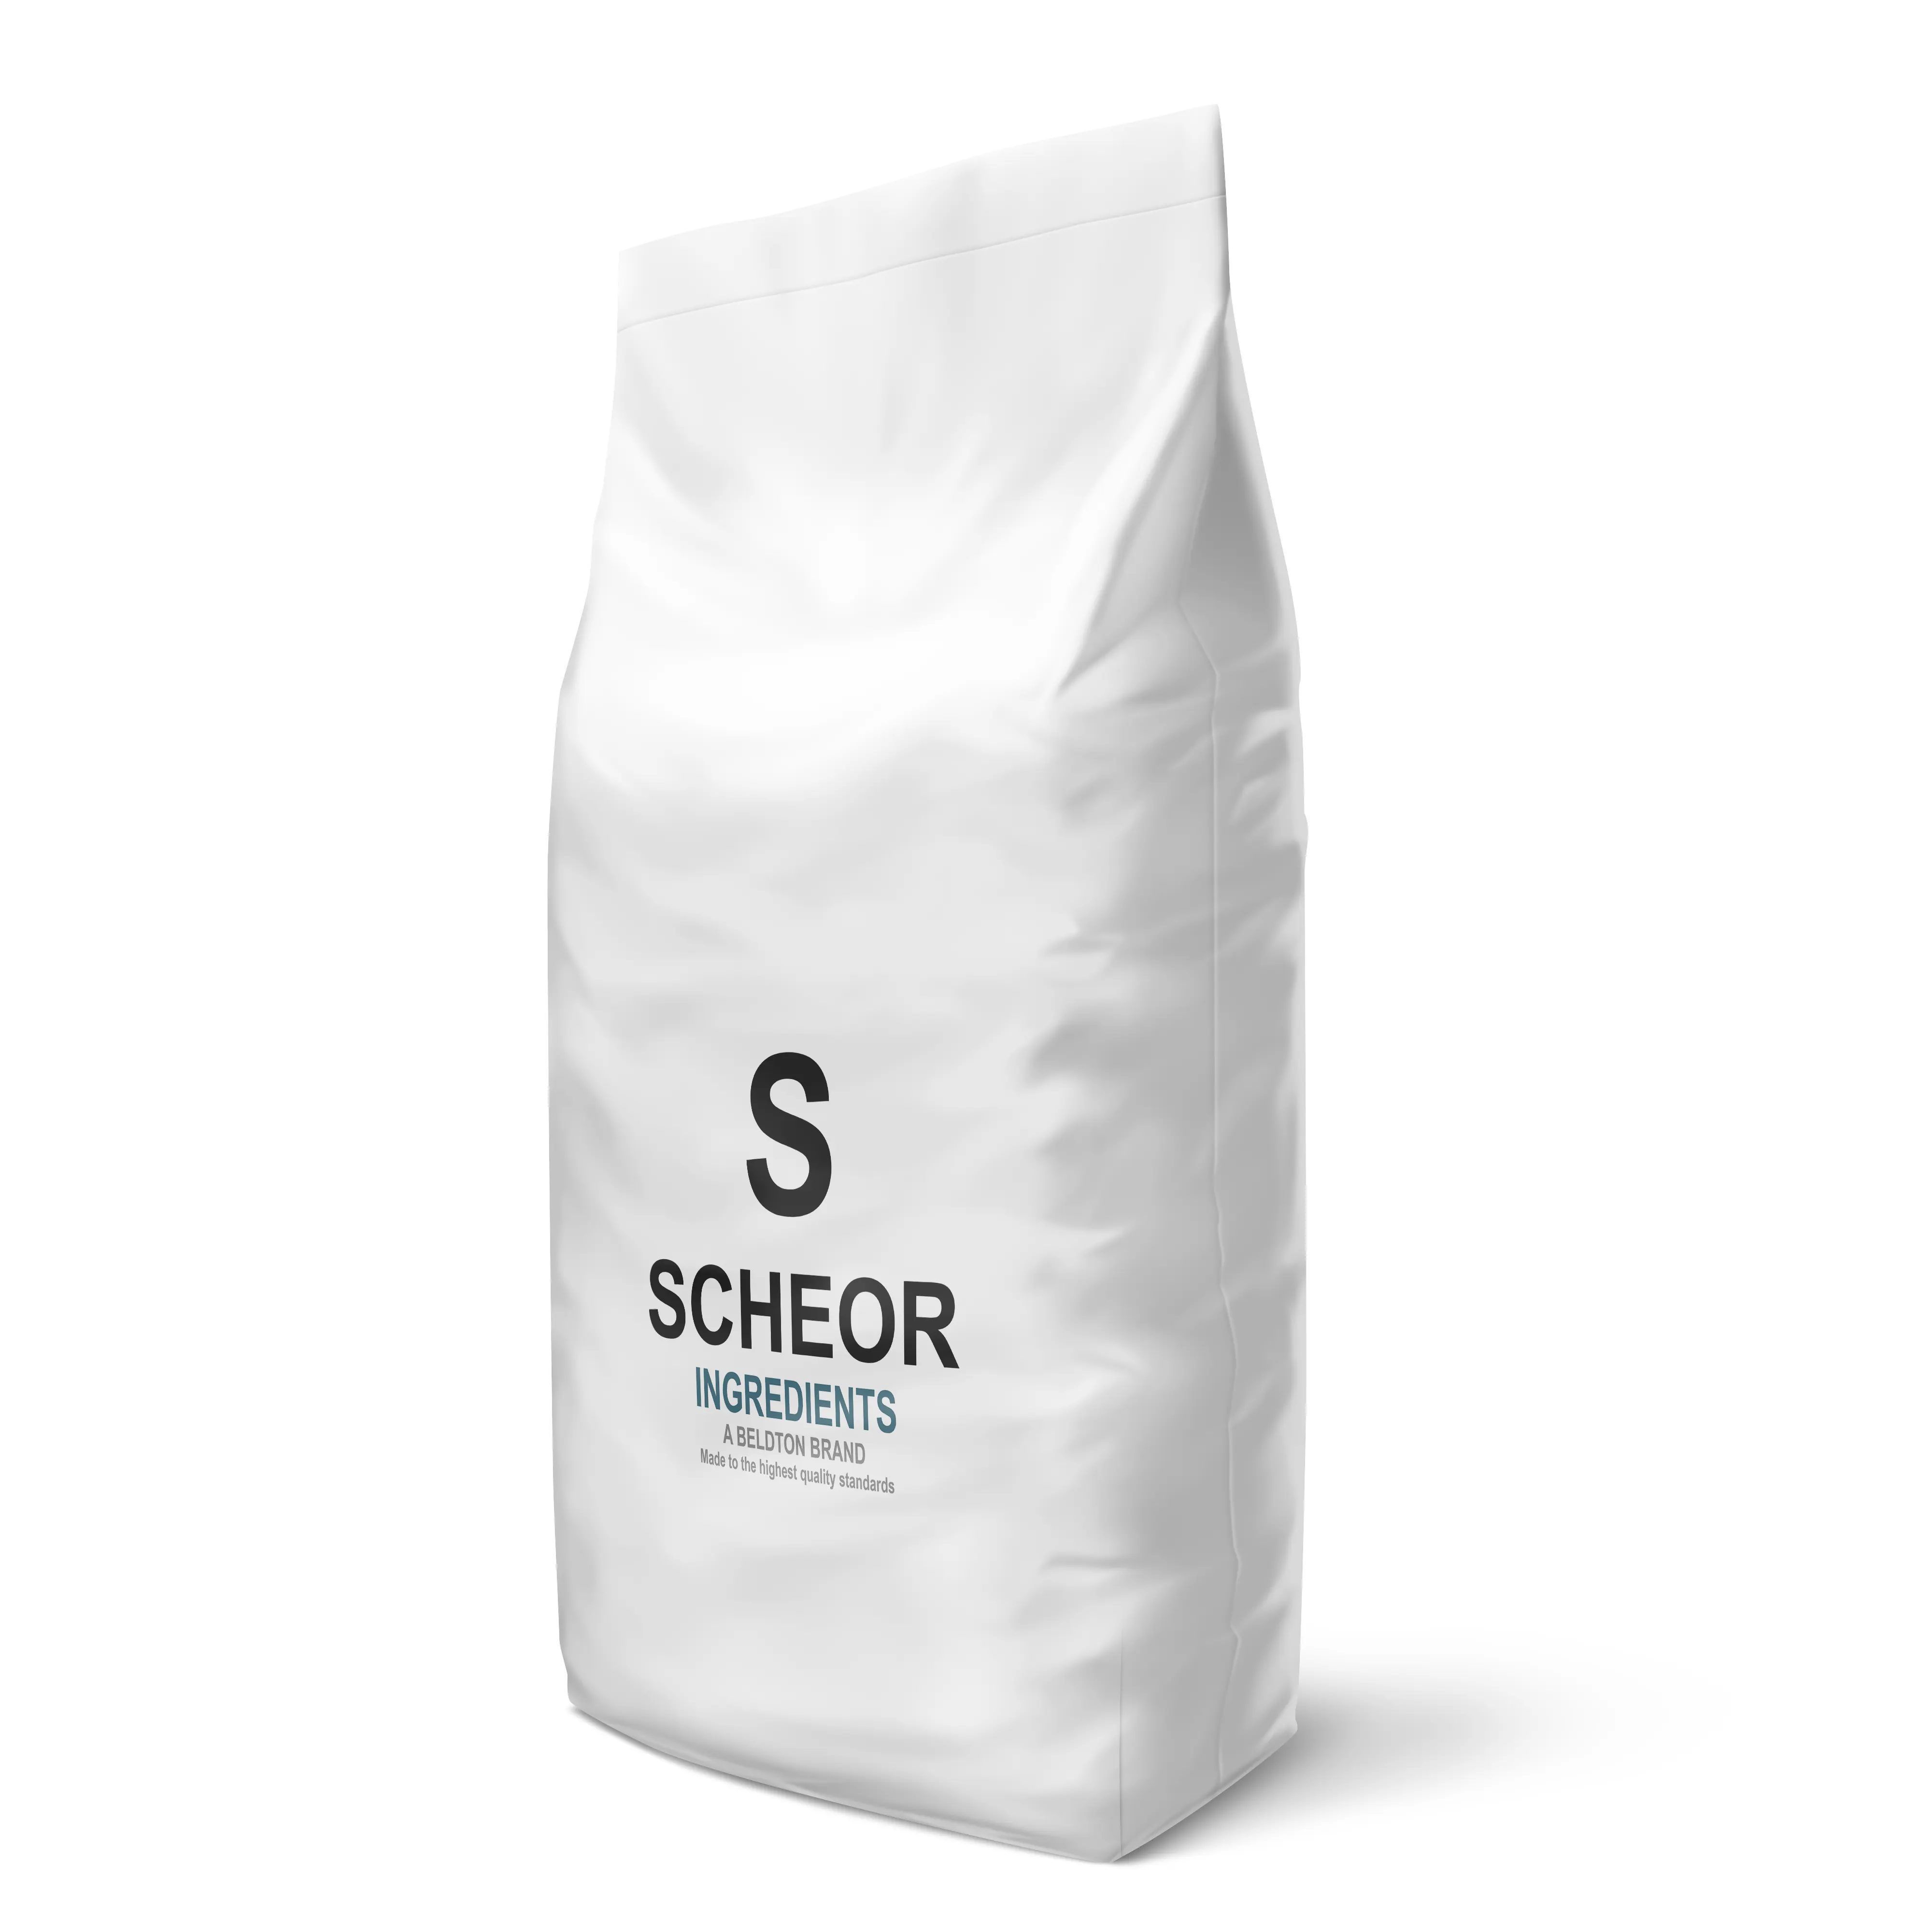 Scheorスキムミルクパウダー1025kgバルクビッグバッグ成分OEMOBMプライベートラベル